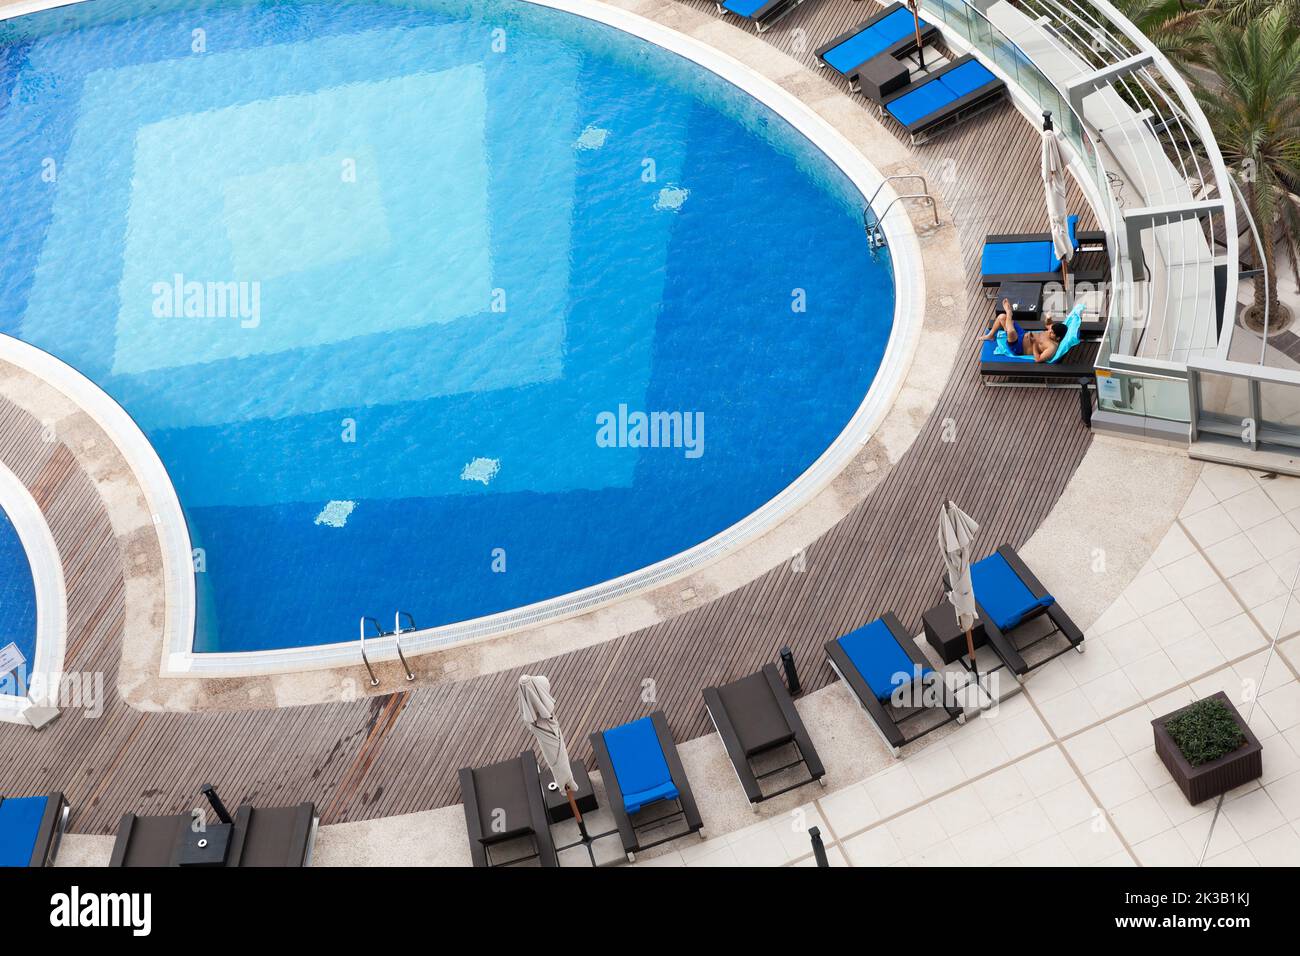 Abu Dhabi, Vereinigte Arabische Emirate - 8. April 2019: Blauer Pool aus der Luft, ein Mann entspannt sich in einer Liege Stockfoto